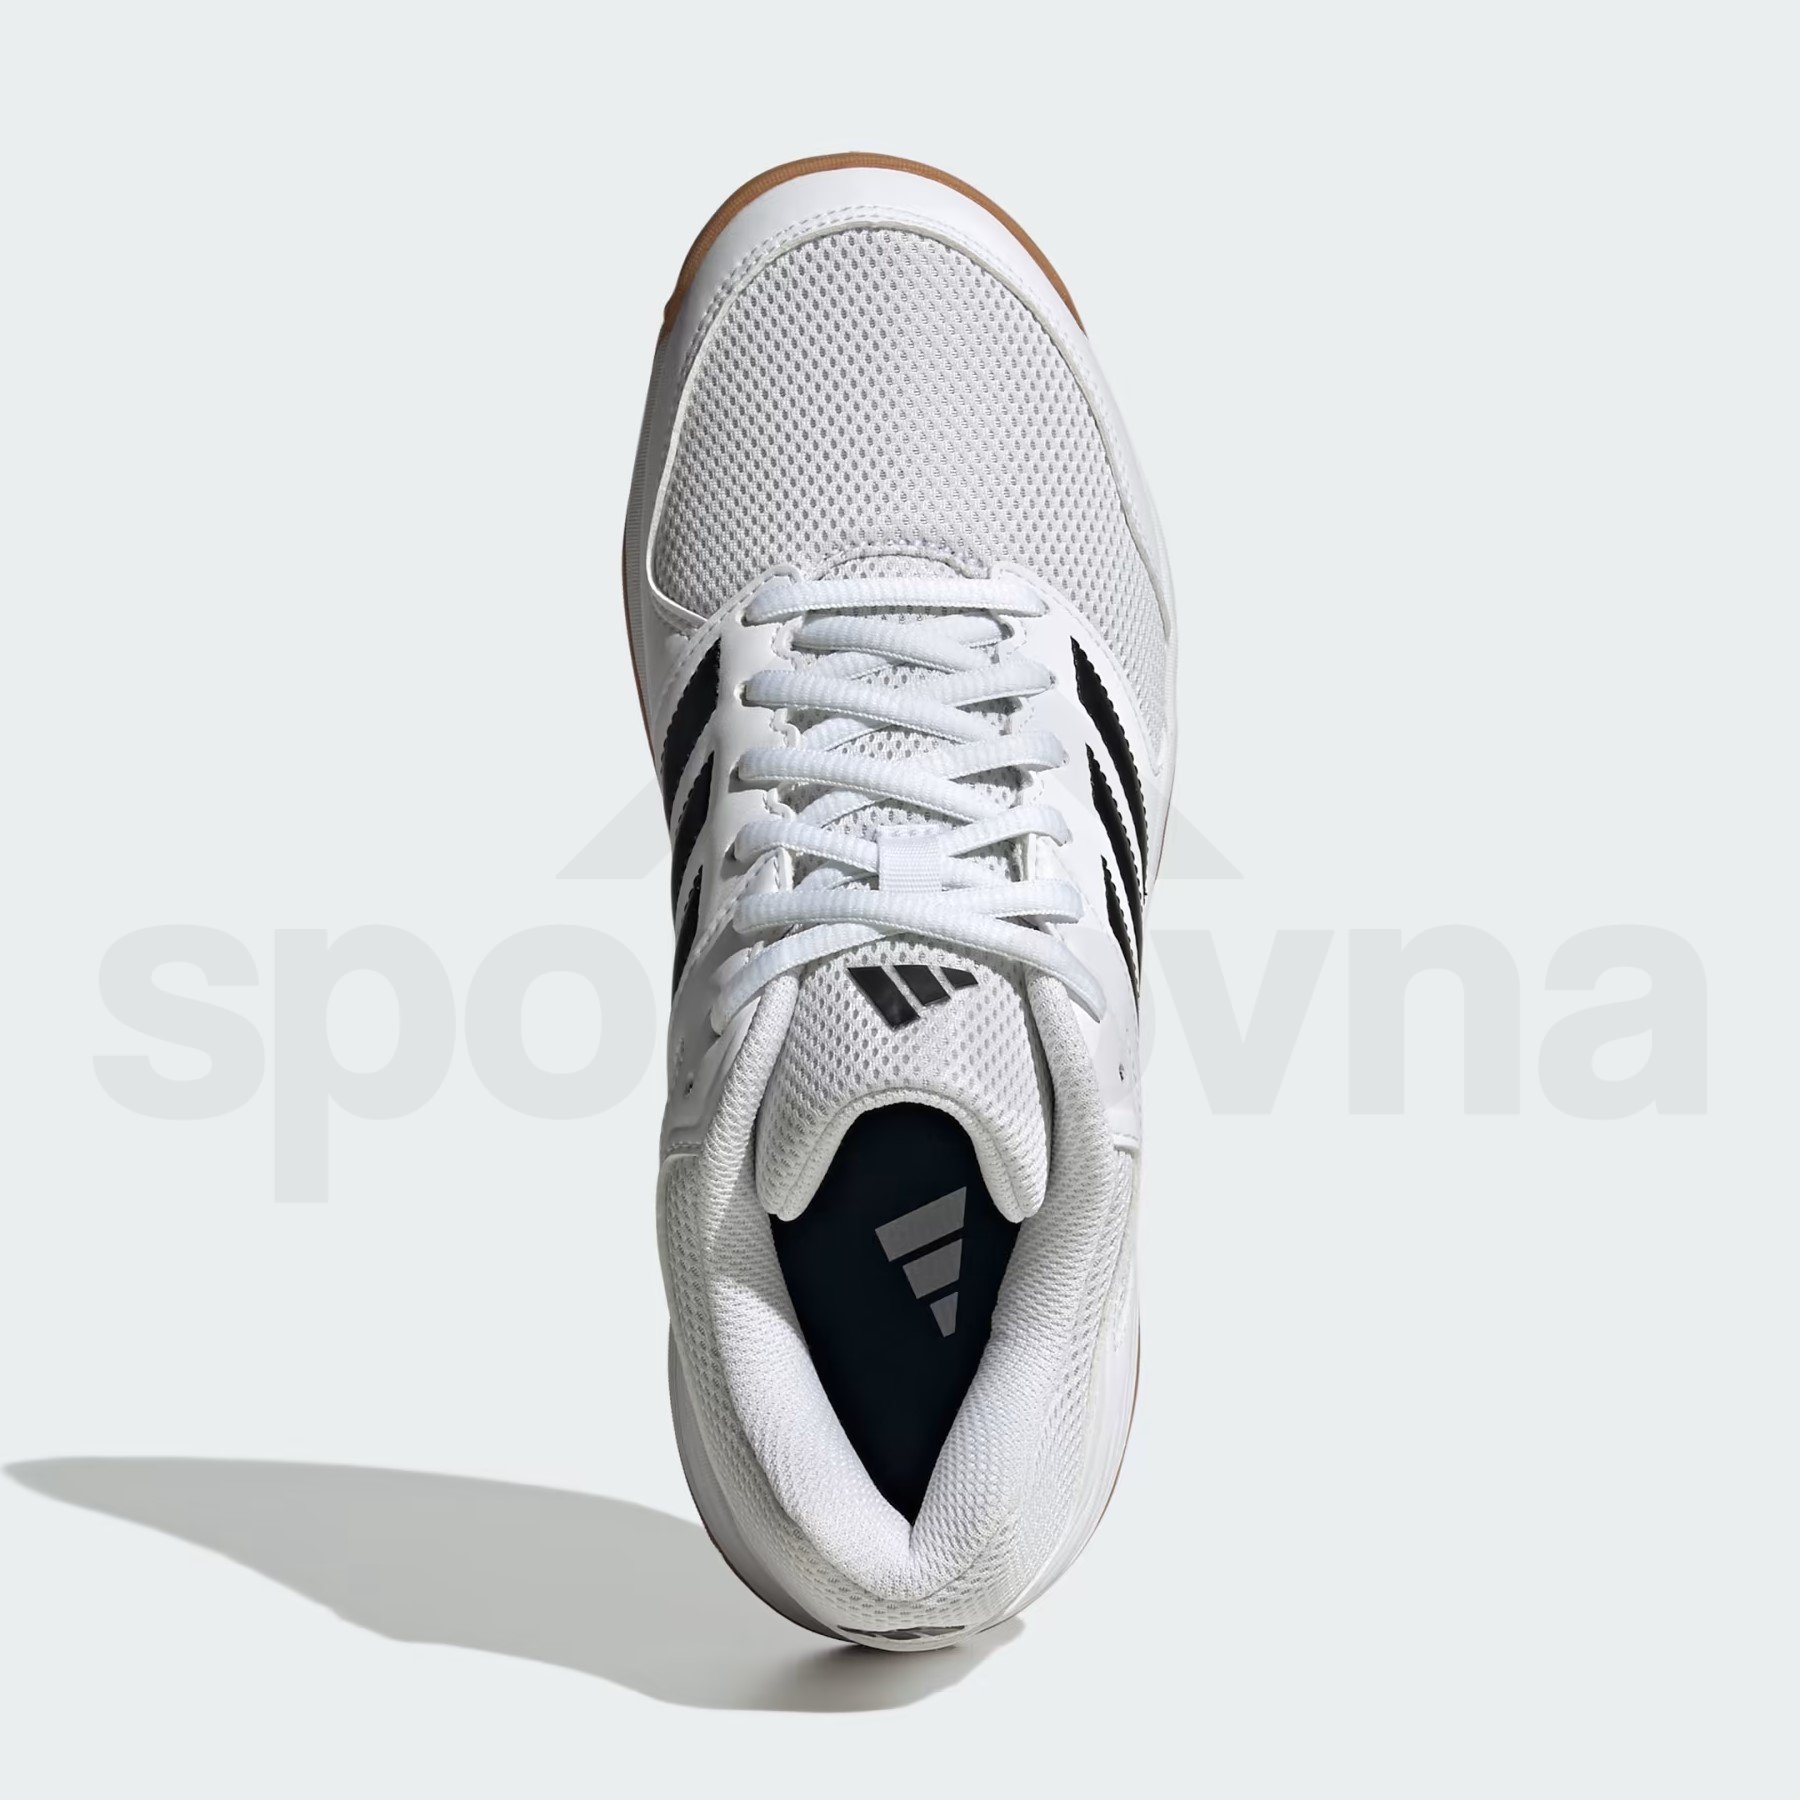 Obuv Adidas Speedcourt W - bílá/černá/hnědá